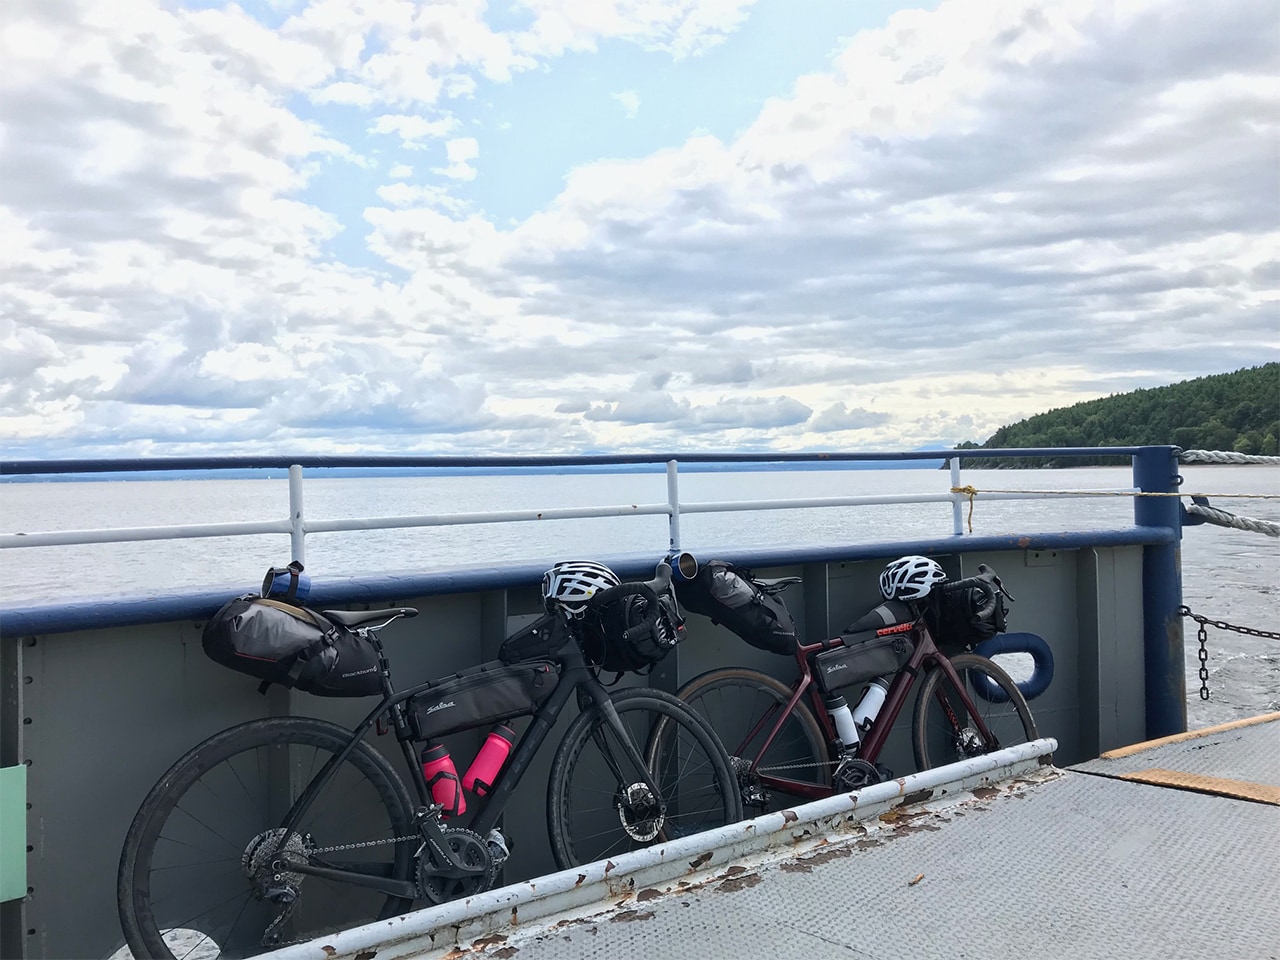 Bikepacking bikes on a boat 